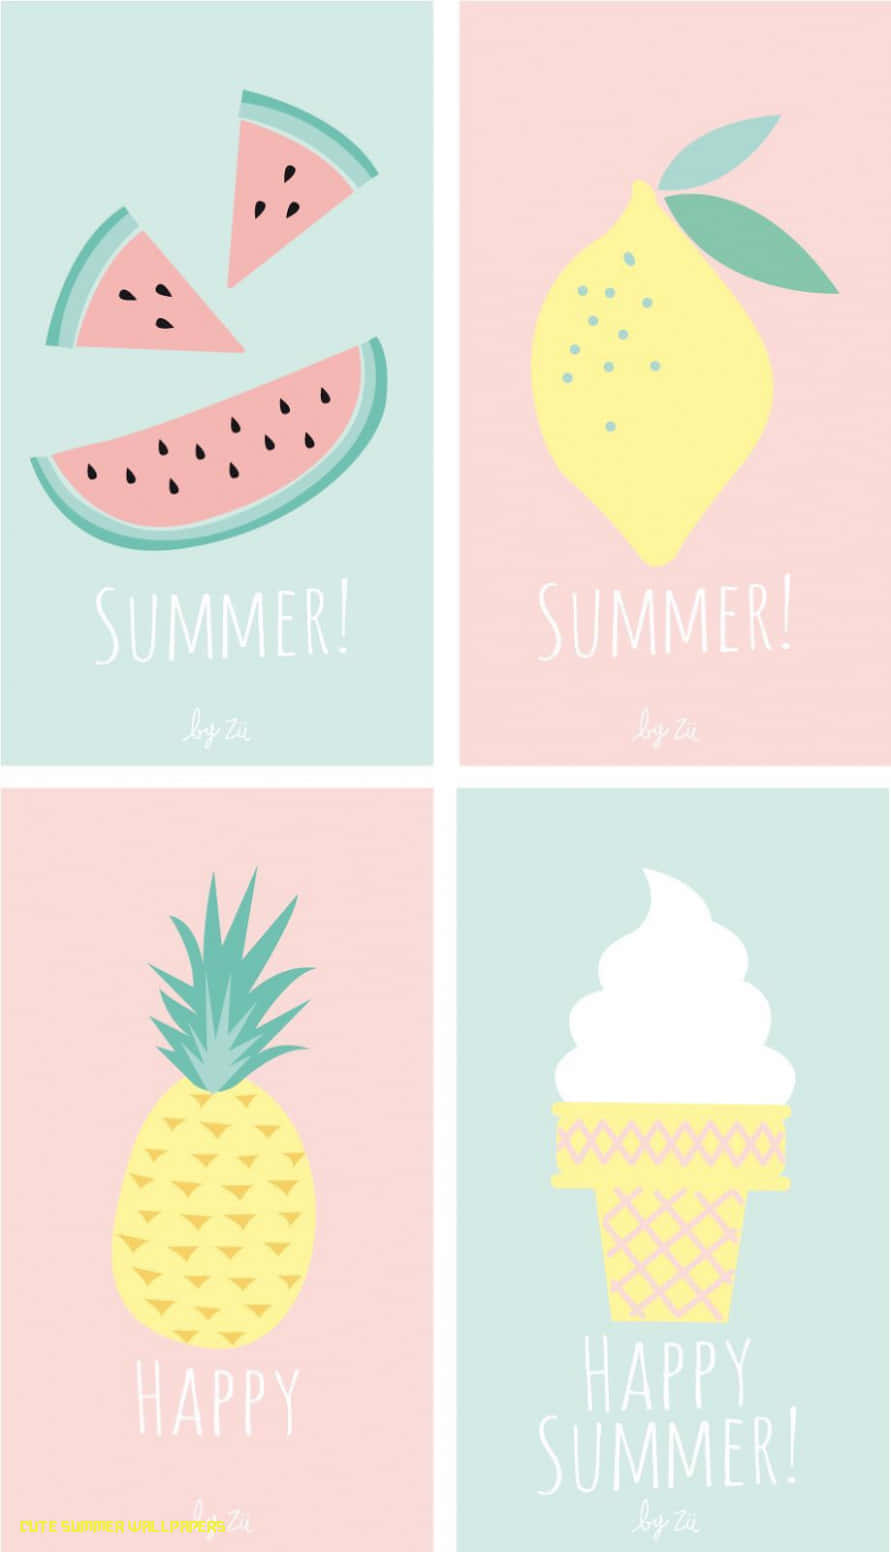 Quatroestampas Temáticas De Verão Com Frutas E Sorvete. Papel de Parede